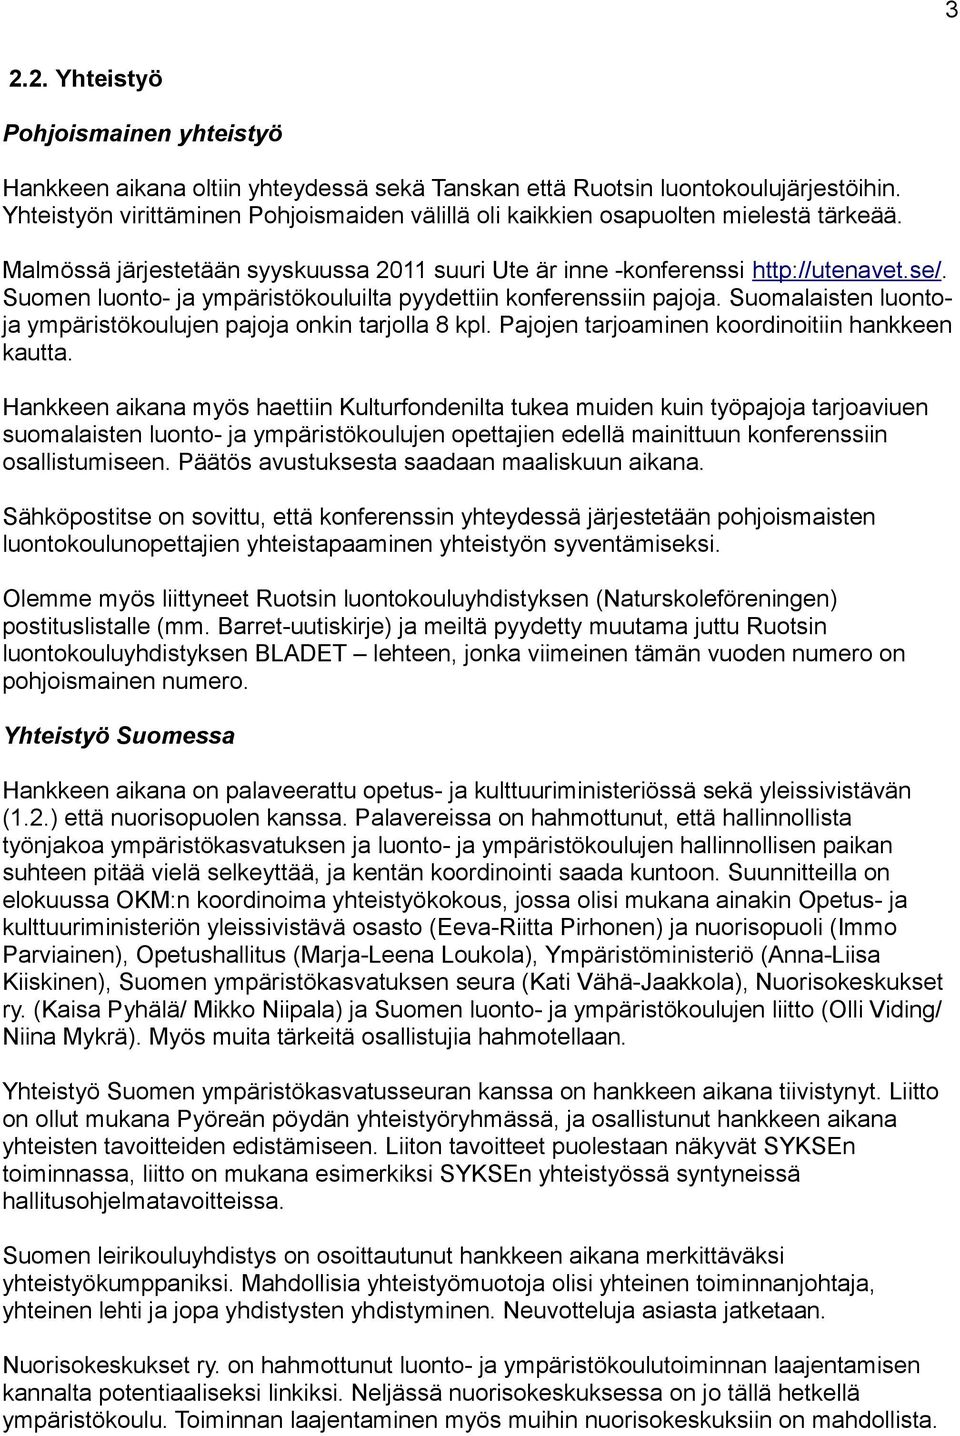 Suomen luonto- ja ympäristökouluilta pyydettiin konferenssiin pajoja. Suomalaisten luontoja ympäristökoulujen pajoja onkin tarjolla 8 kpl. Pajojen tarjoaminen koordinoitiin hankkeen kautta.